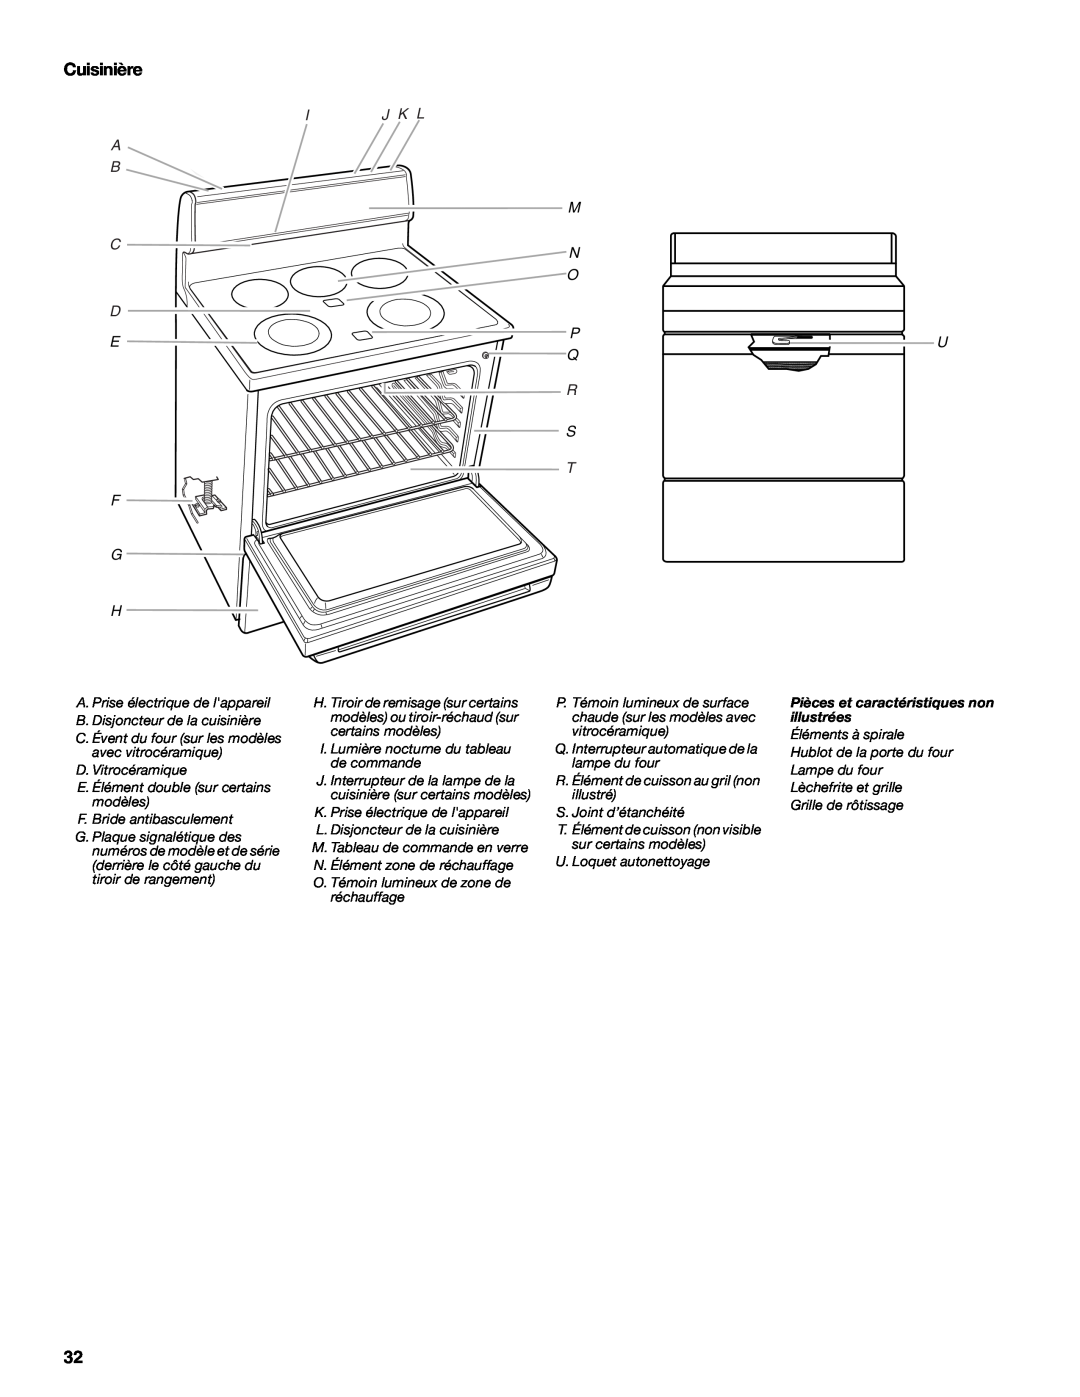 Whirlpool 9758899 manual Cuisinière, A B C D, Ij K L M N O, P Q R S T, Pièces et caractéristiques non illustrées 